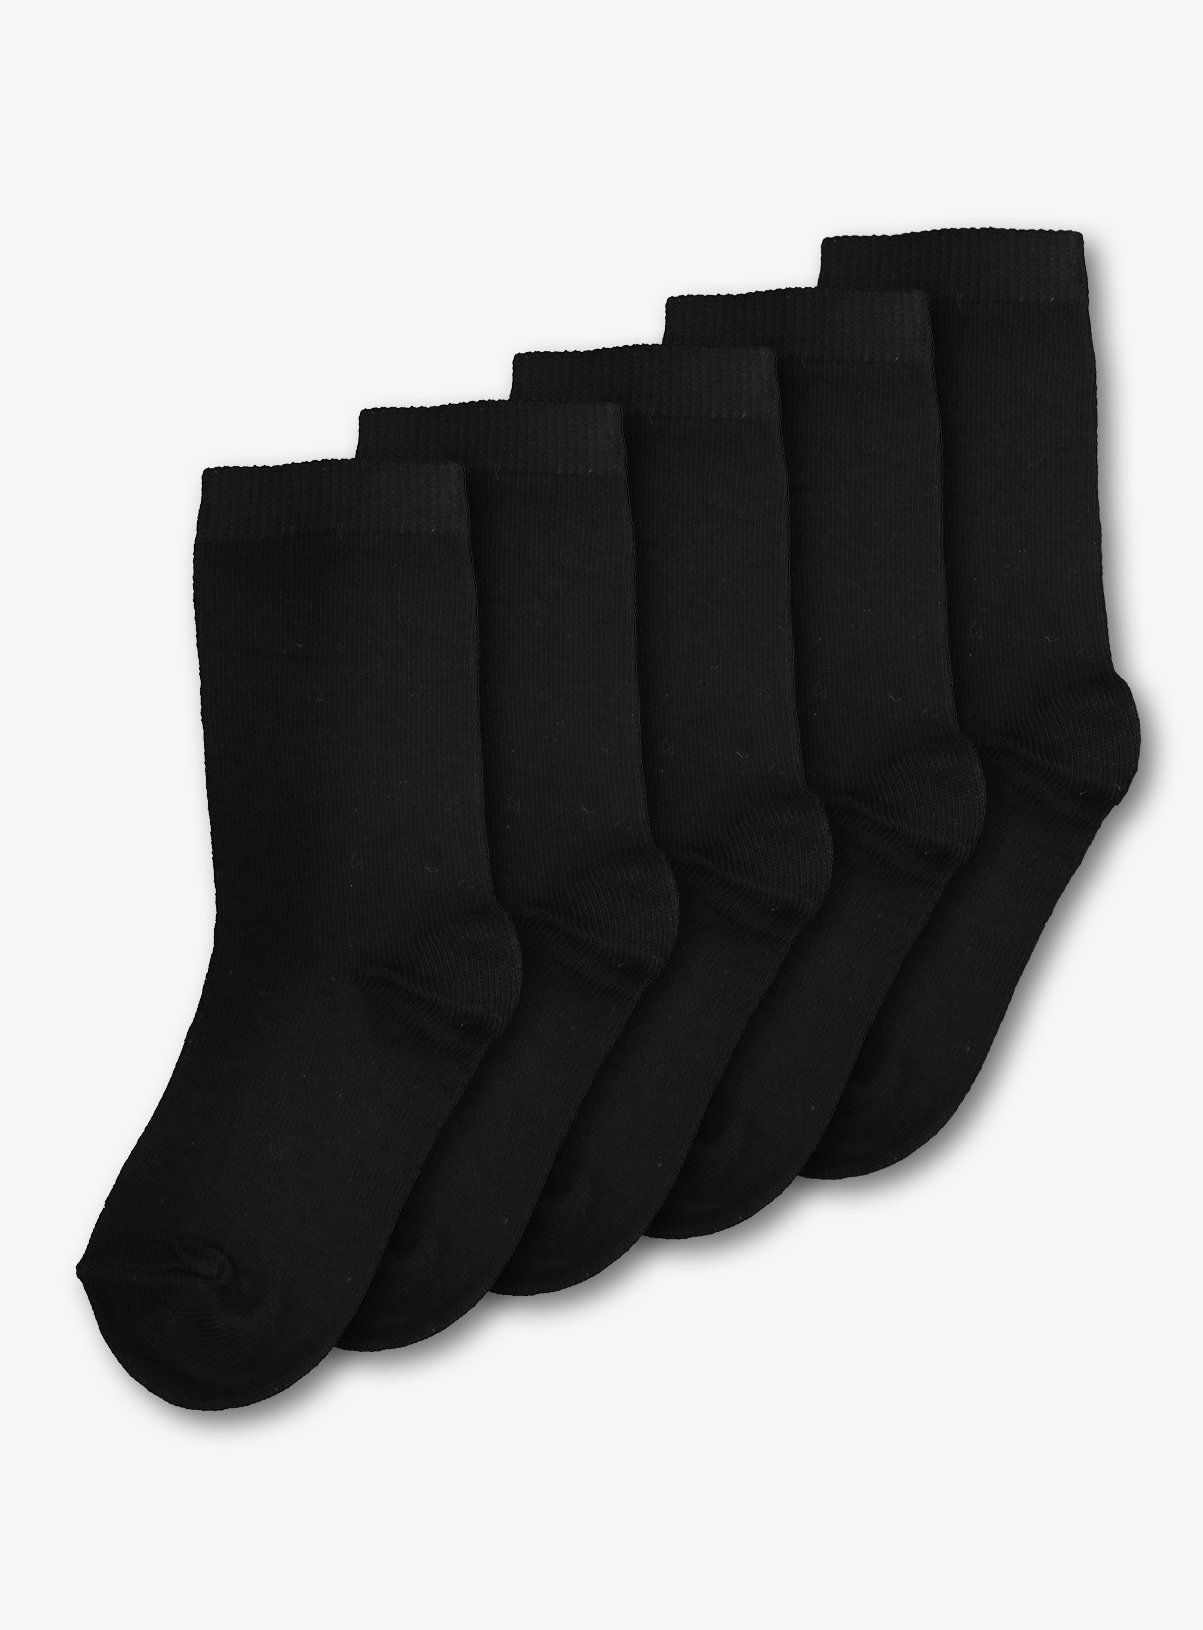 buy socks